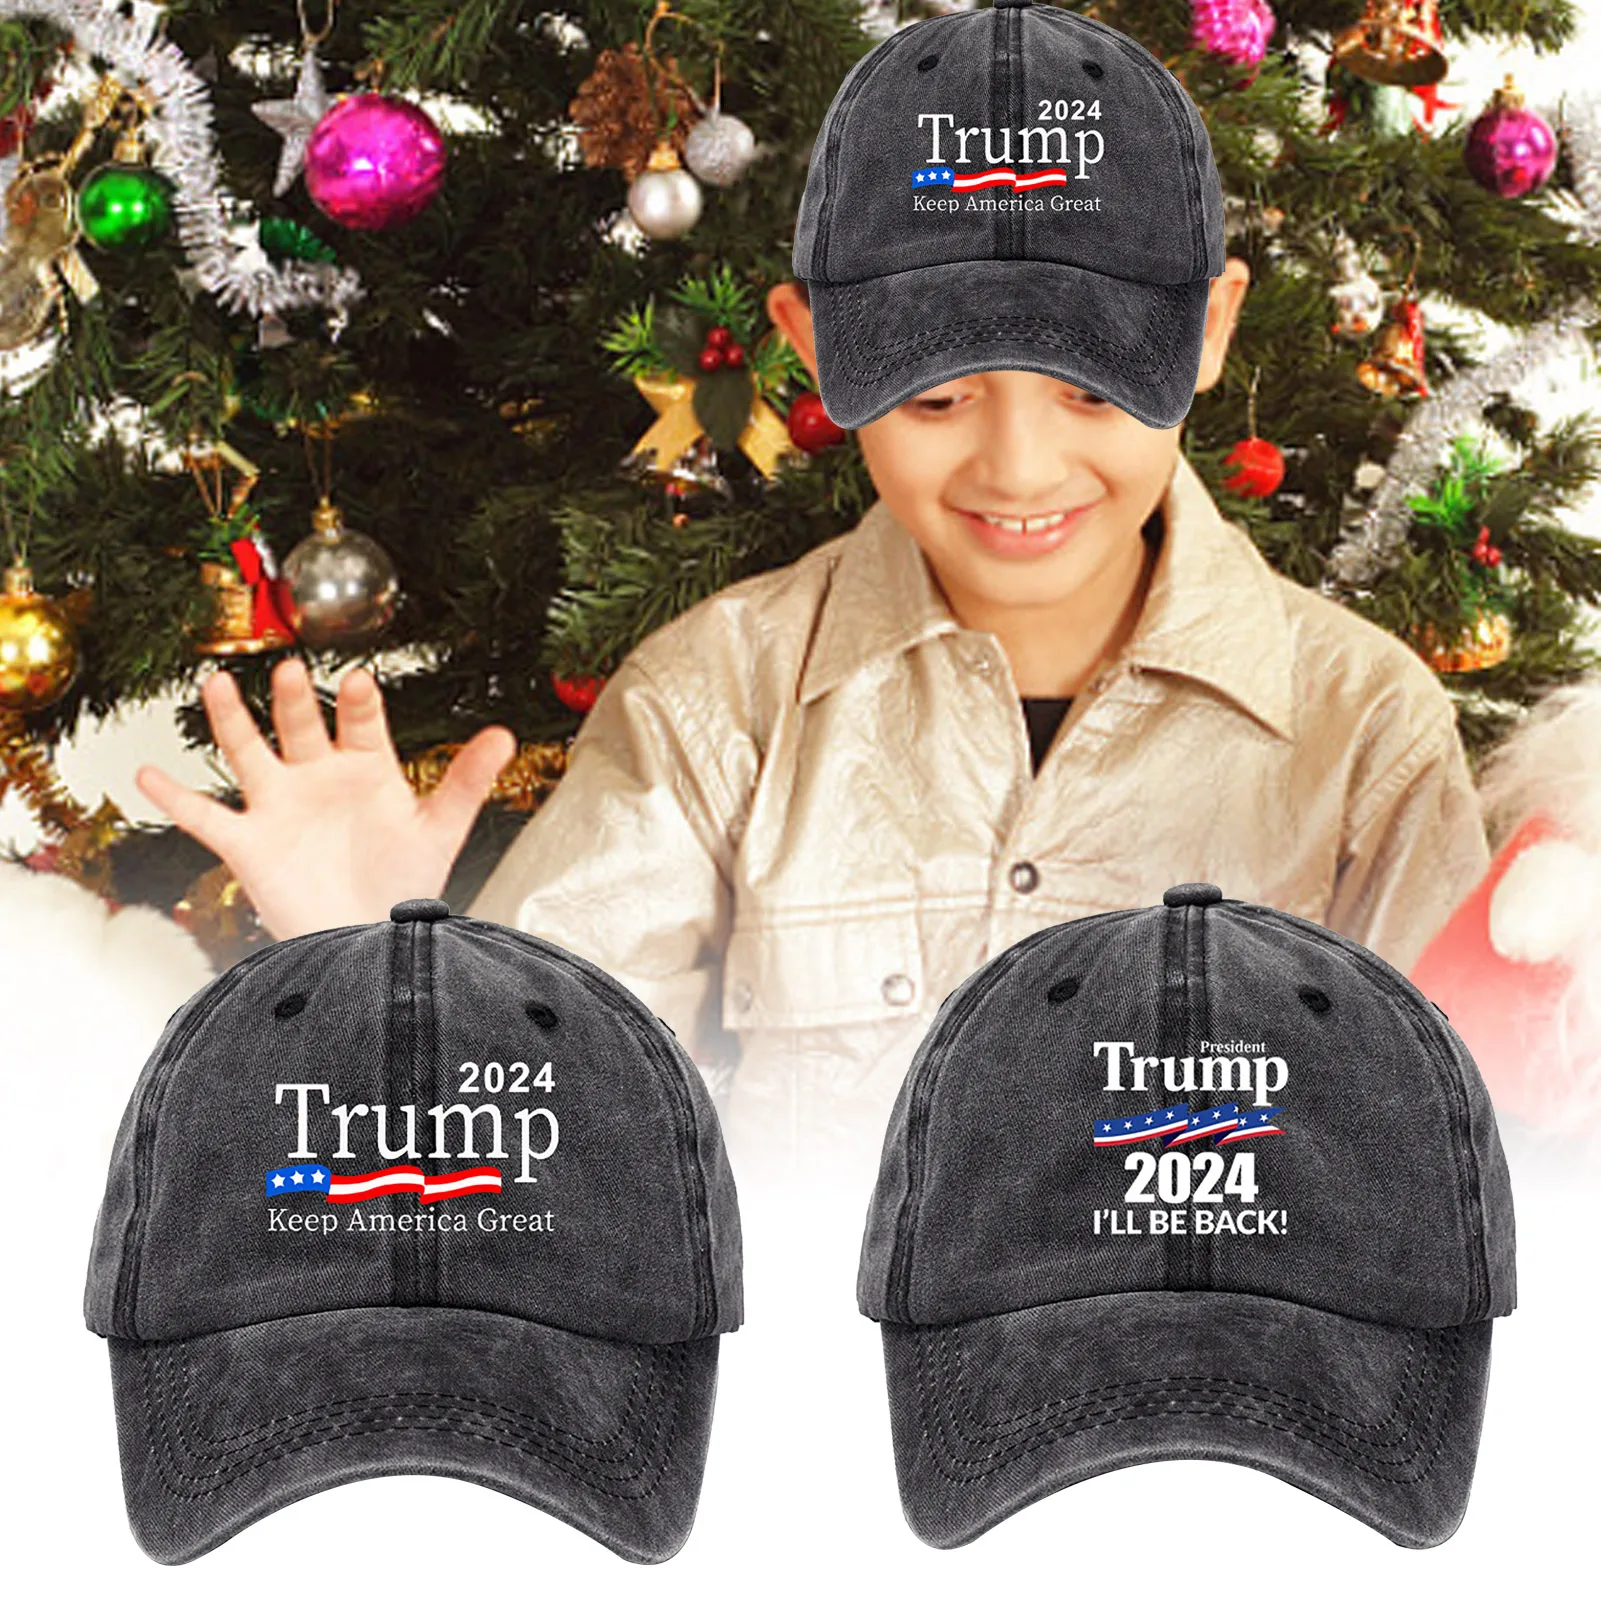 

Трамп 2024, бейсболка для выборов, Трамп сохраняет Америку великолепным слоганом, шляпа с флагом, удобная шляпа Президента для активного отды...